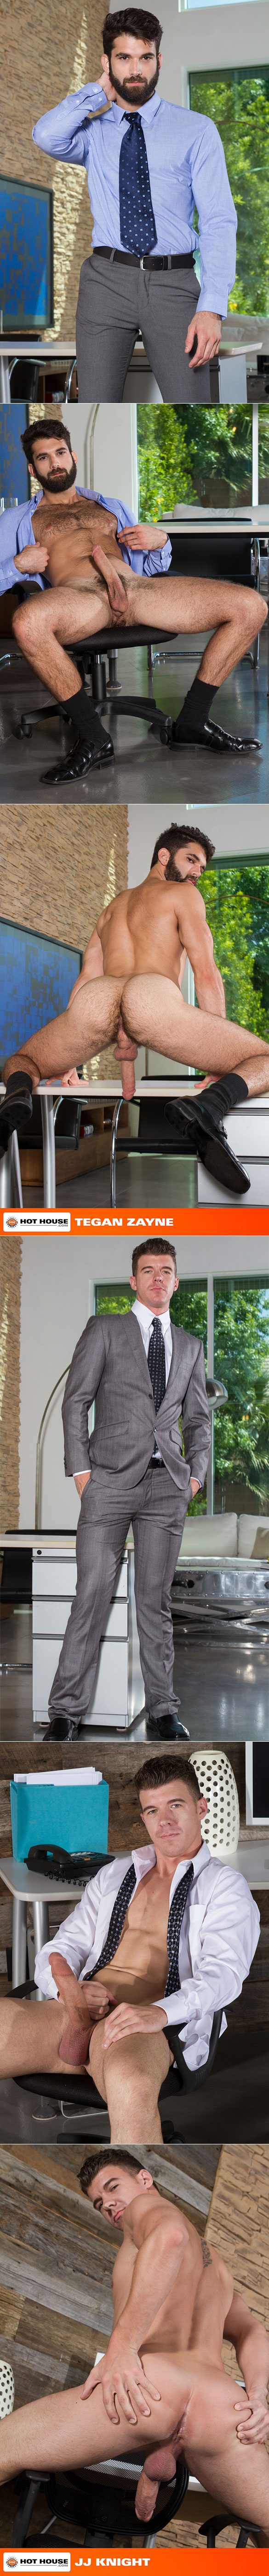 HotHouse: JJ Knight pounds Tegan Zayne in "On the Hunt"